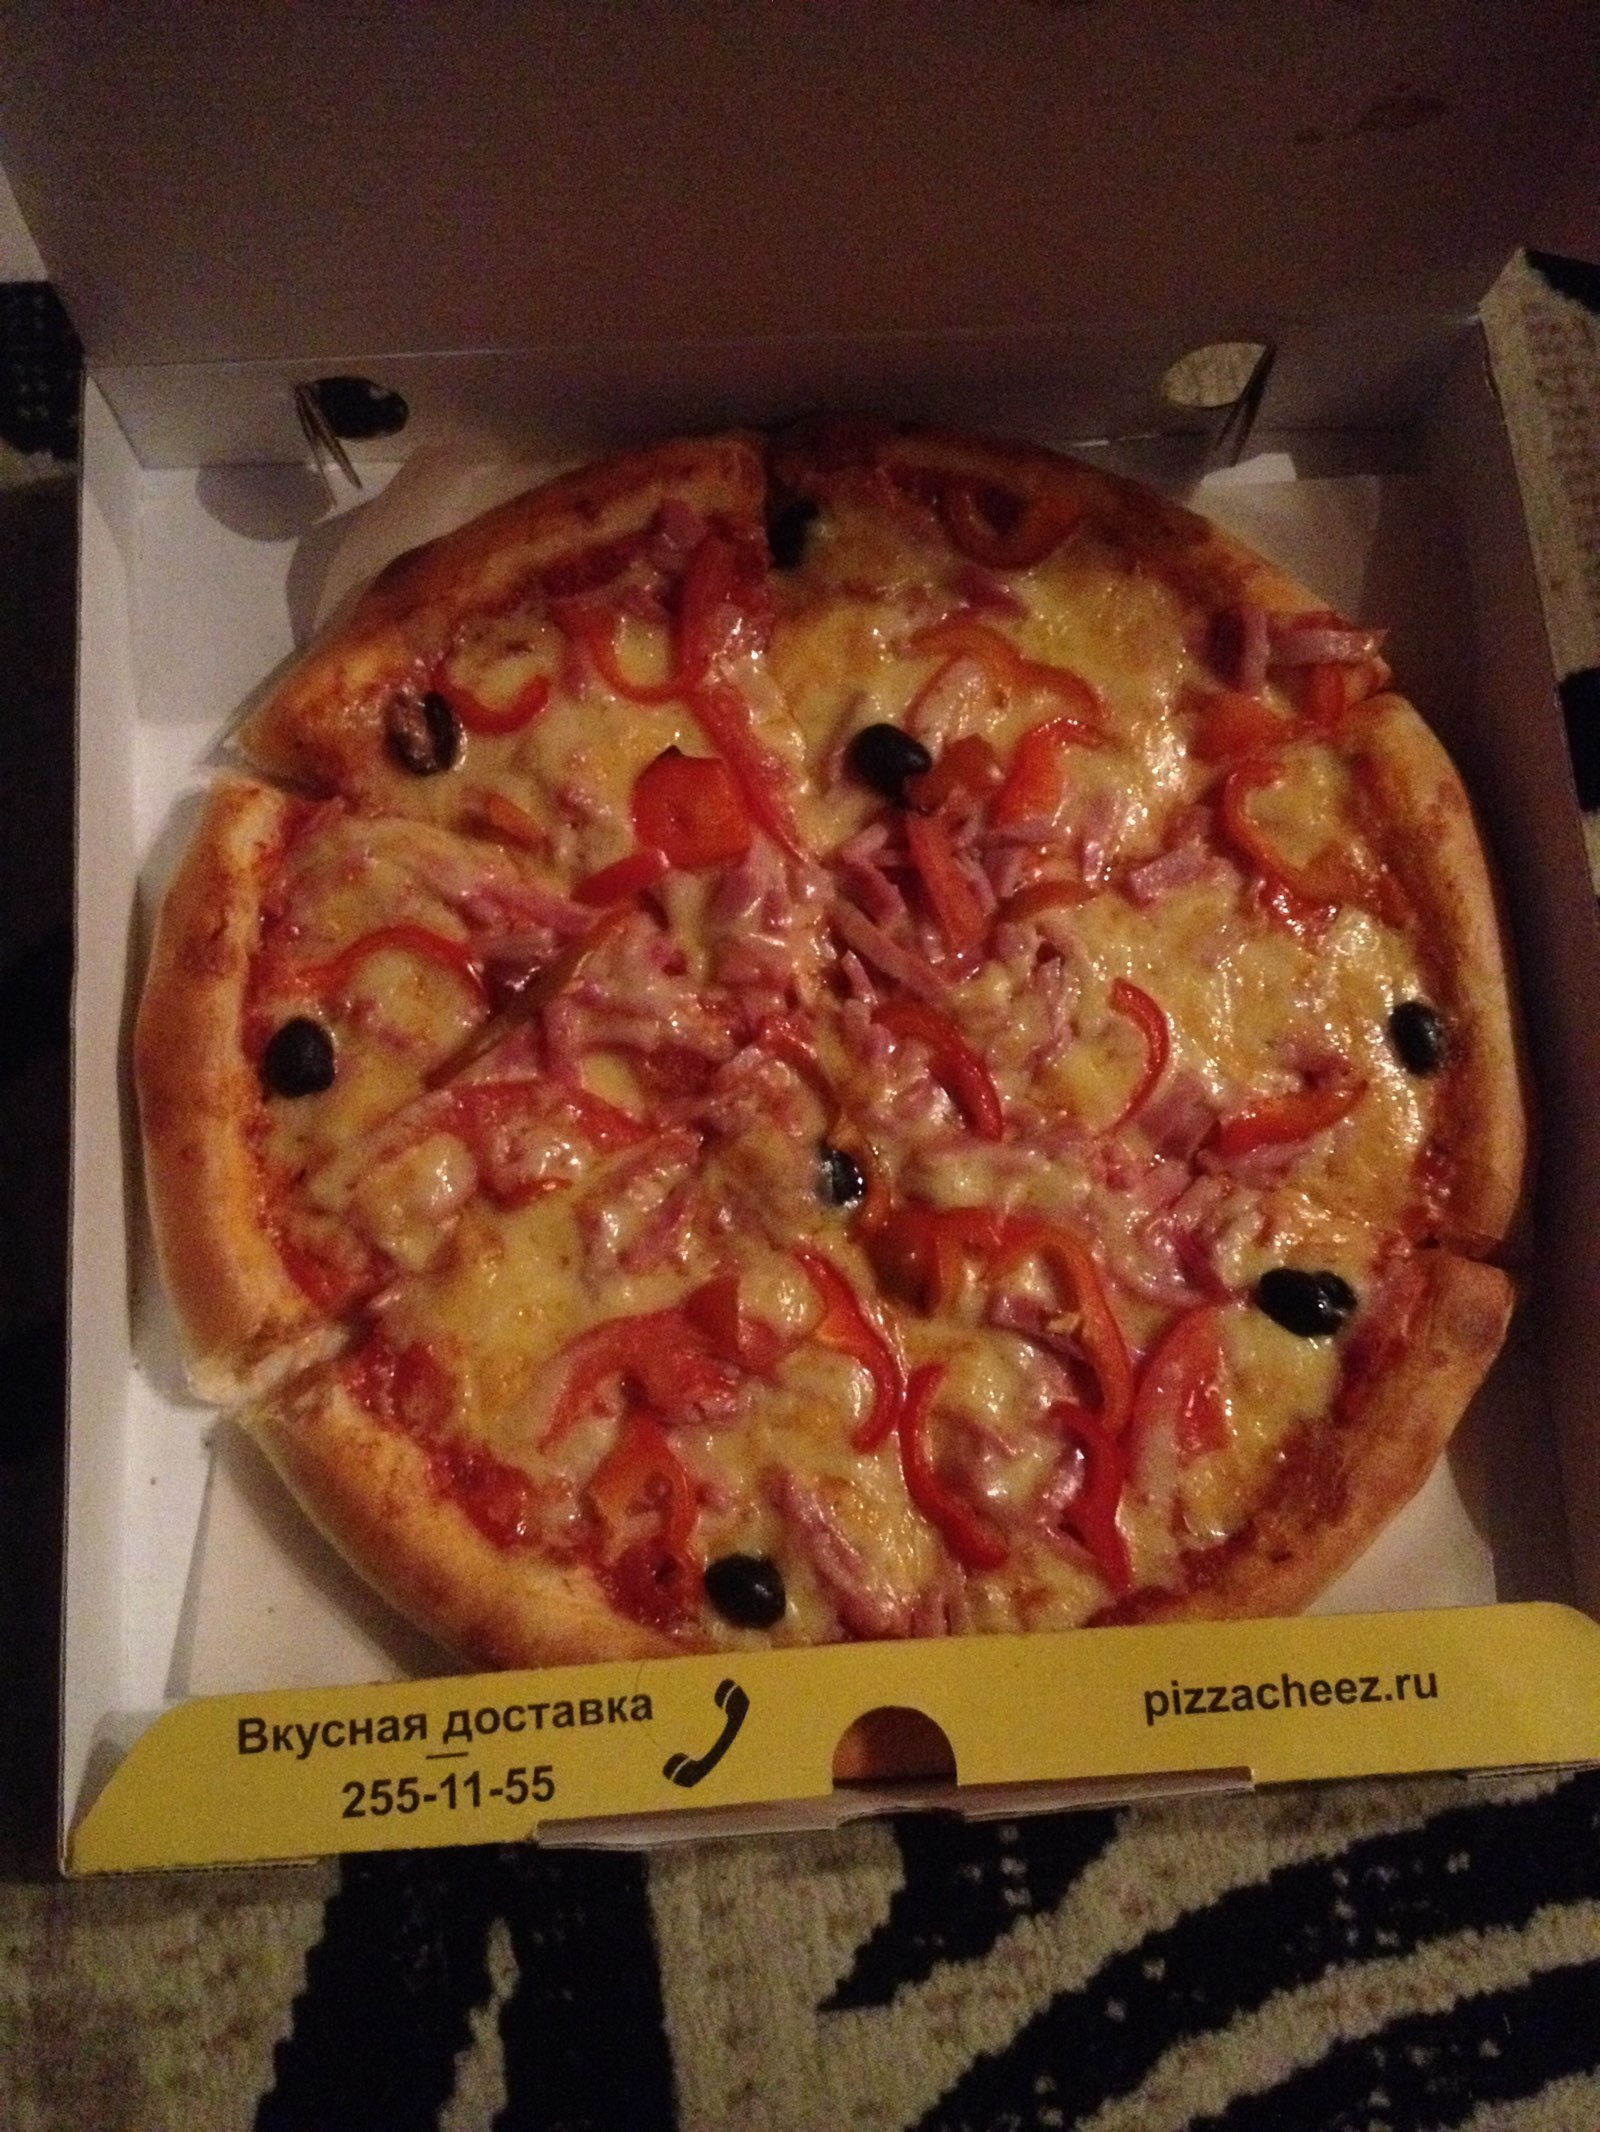 лучшая пицца в красноярске с доставкой рейтинг фото 21